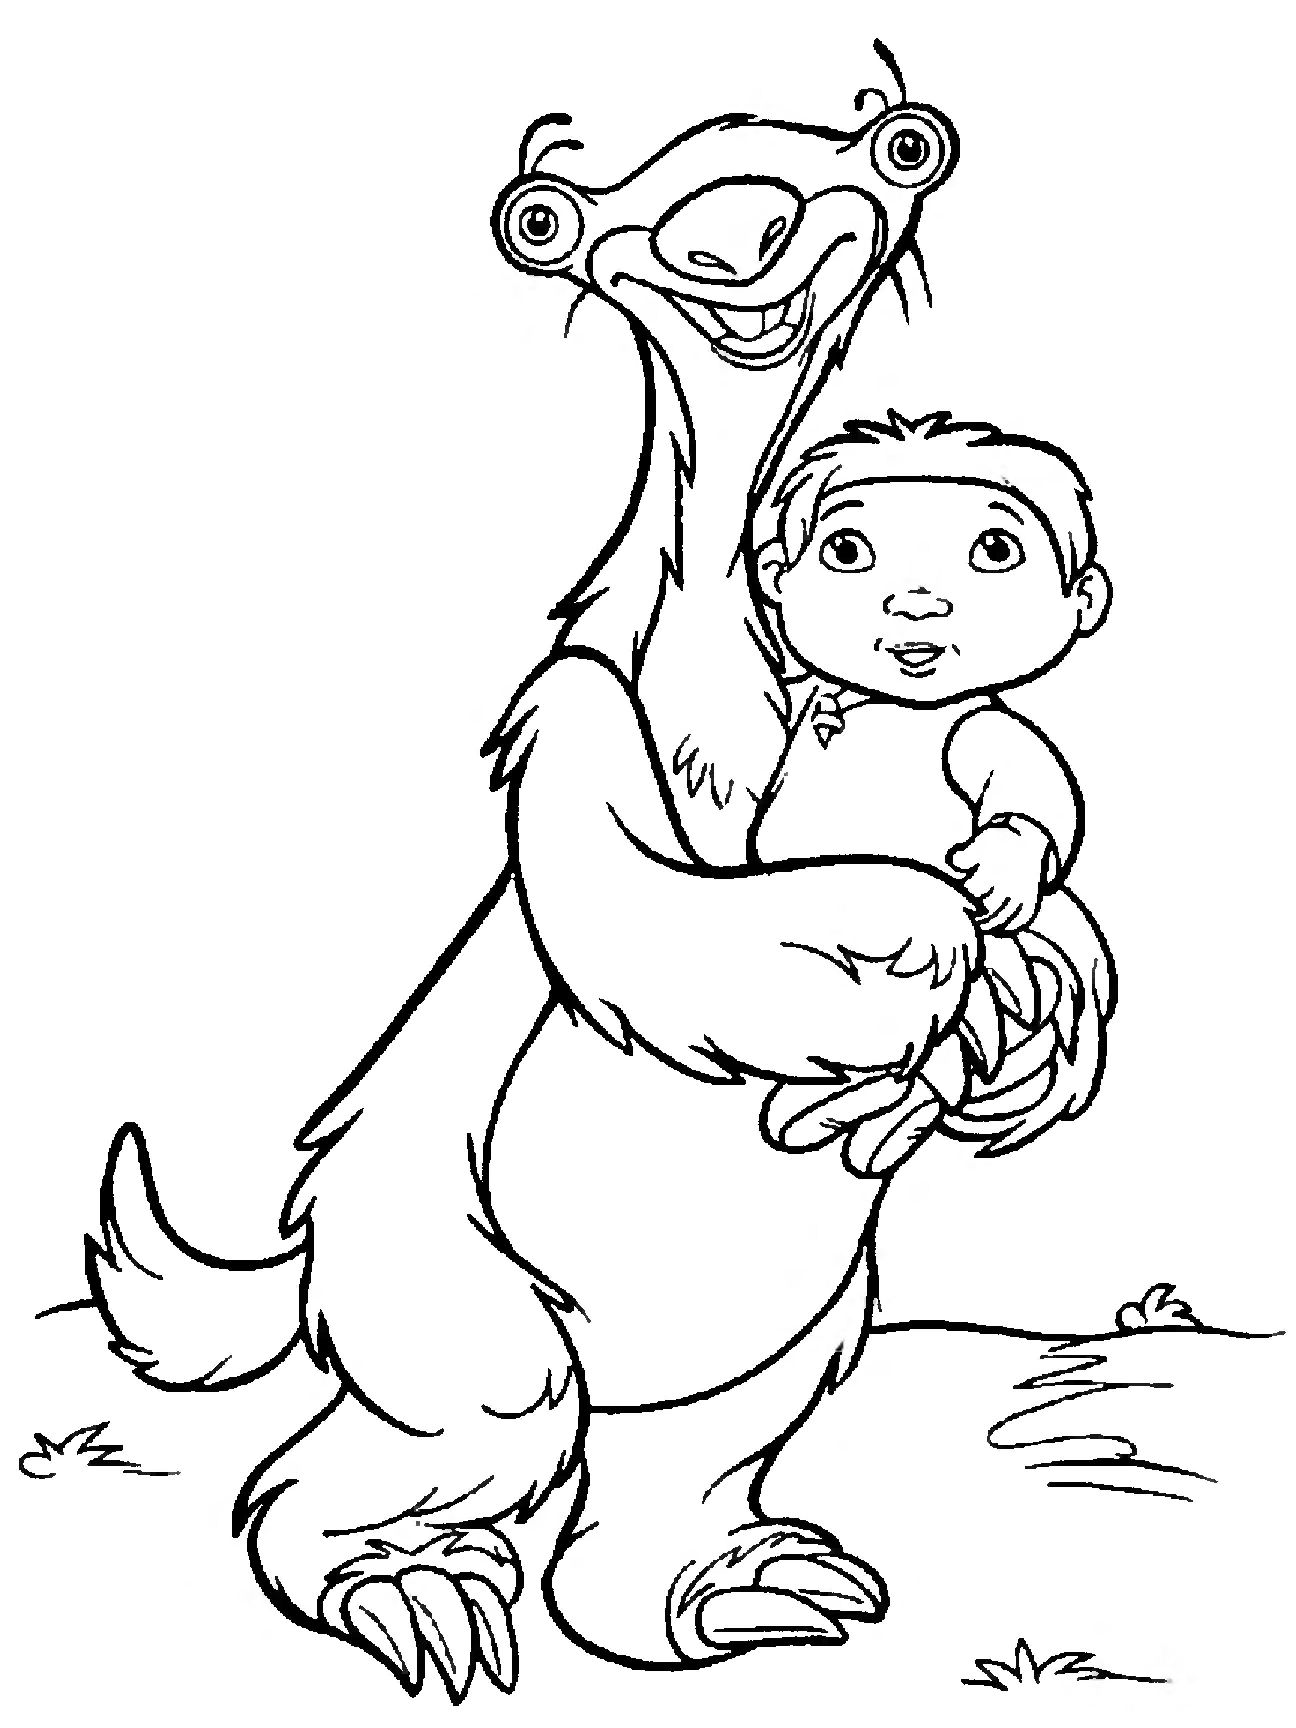 Раскраска Ленивец сид и ребенок из мультфильма Ледниковый период для мальчиков (ленивец, ребенок)